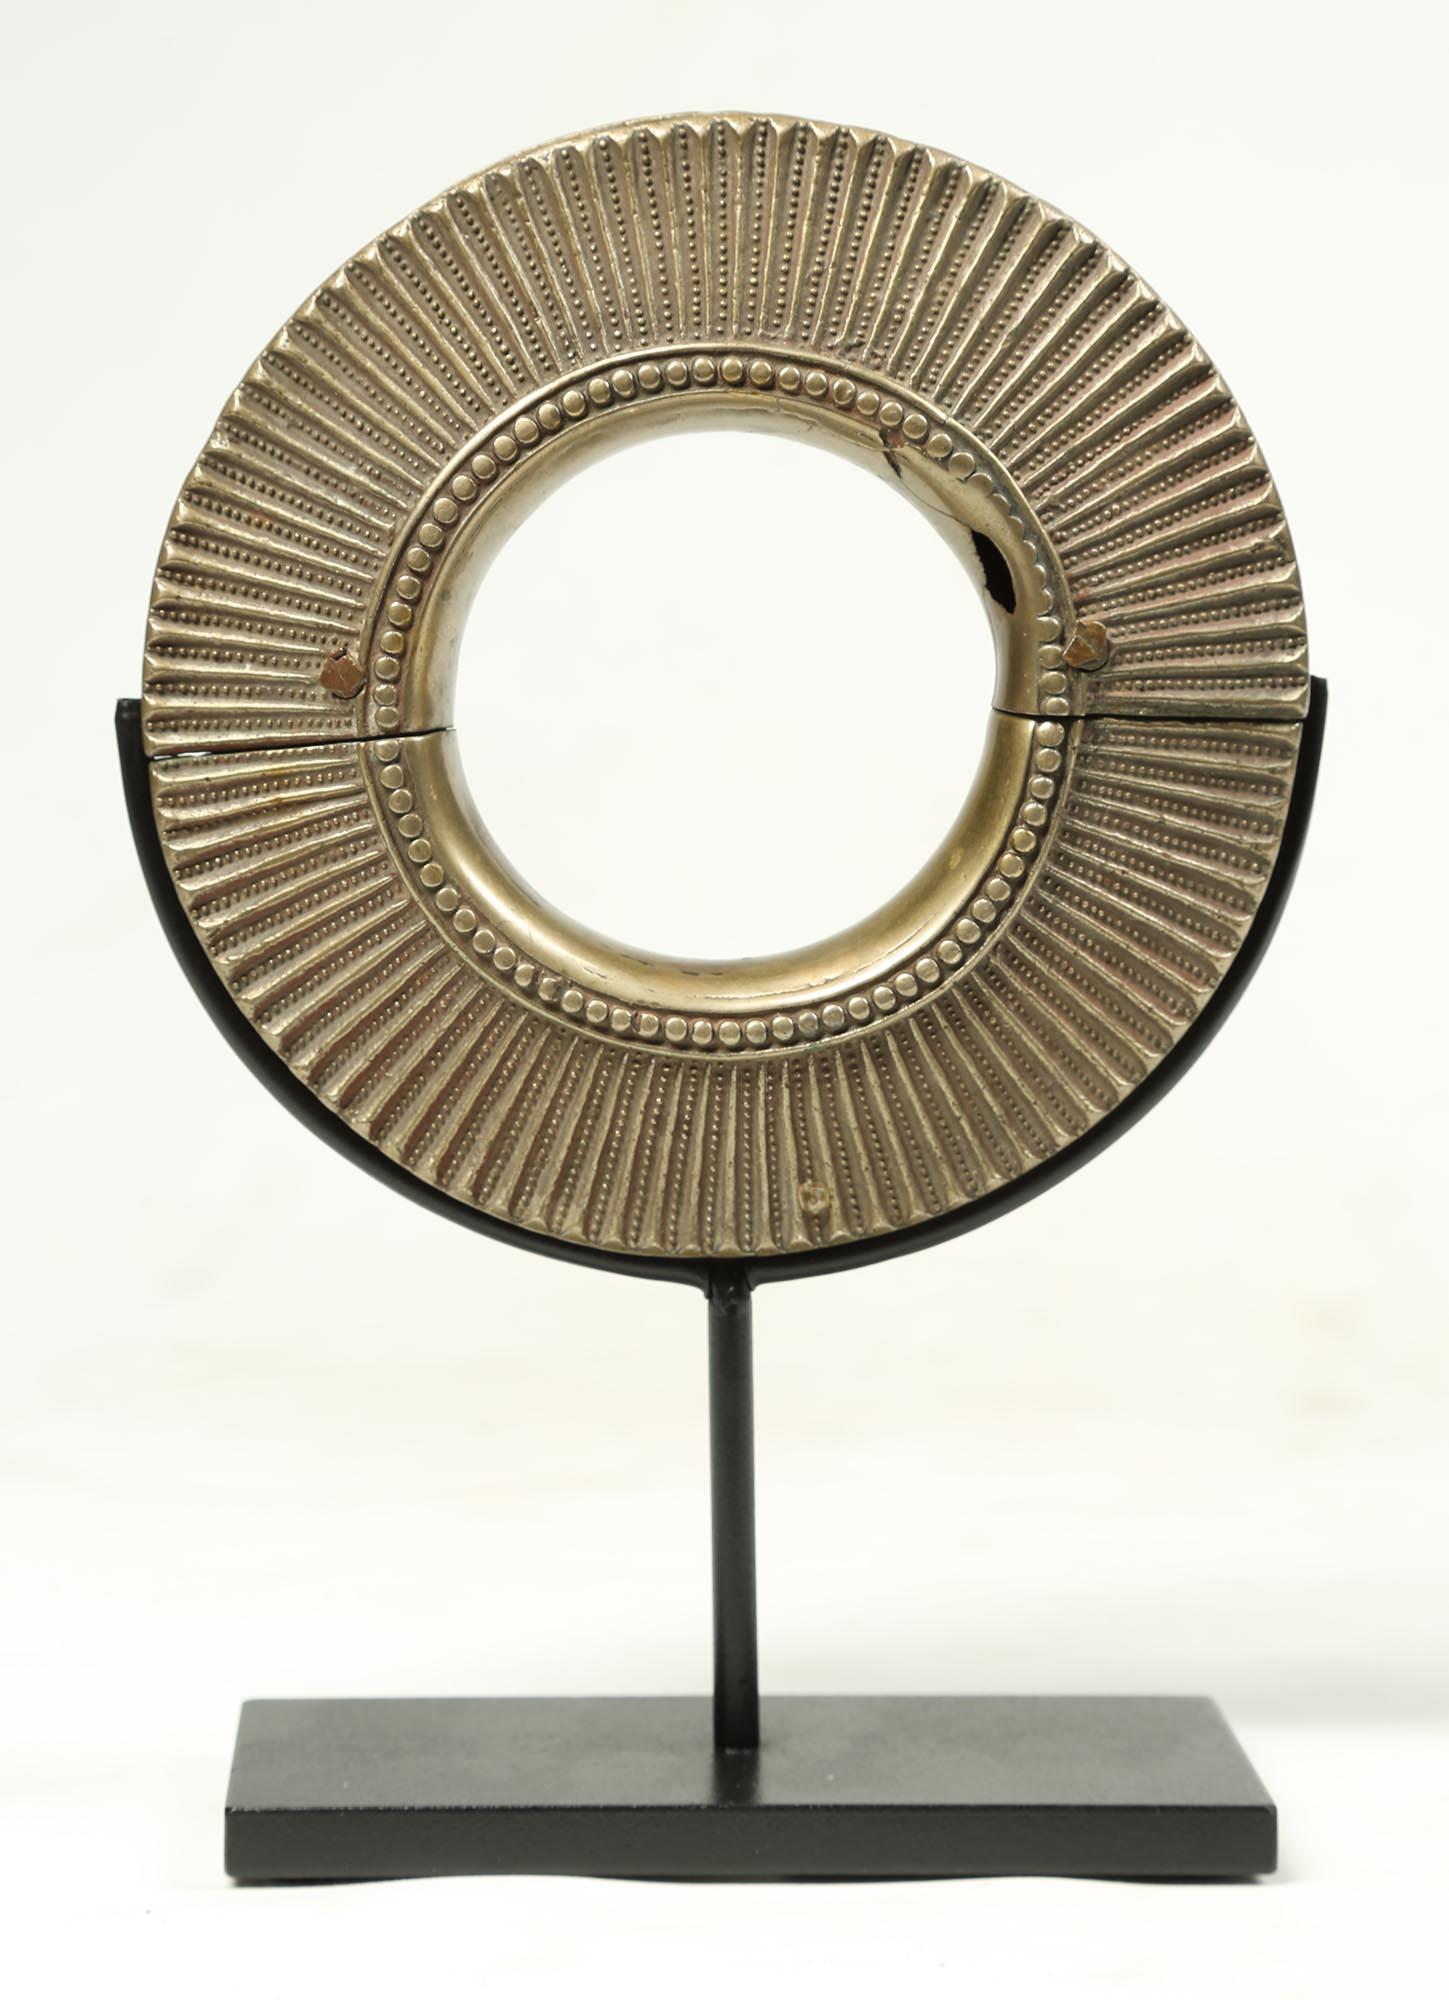 Bracelet en métal mélangé blanc et laiton coulé de la fin du XIXe au début du XXe siècle, originaire d'Afrique de l'Est, peut-être lié aux États arabes. Magnifique design géométrique moulé à l'extérieur avec de fins motifs répétitifs, lisse à